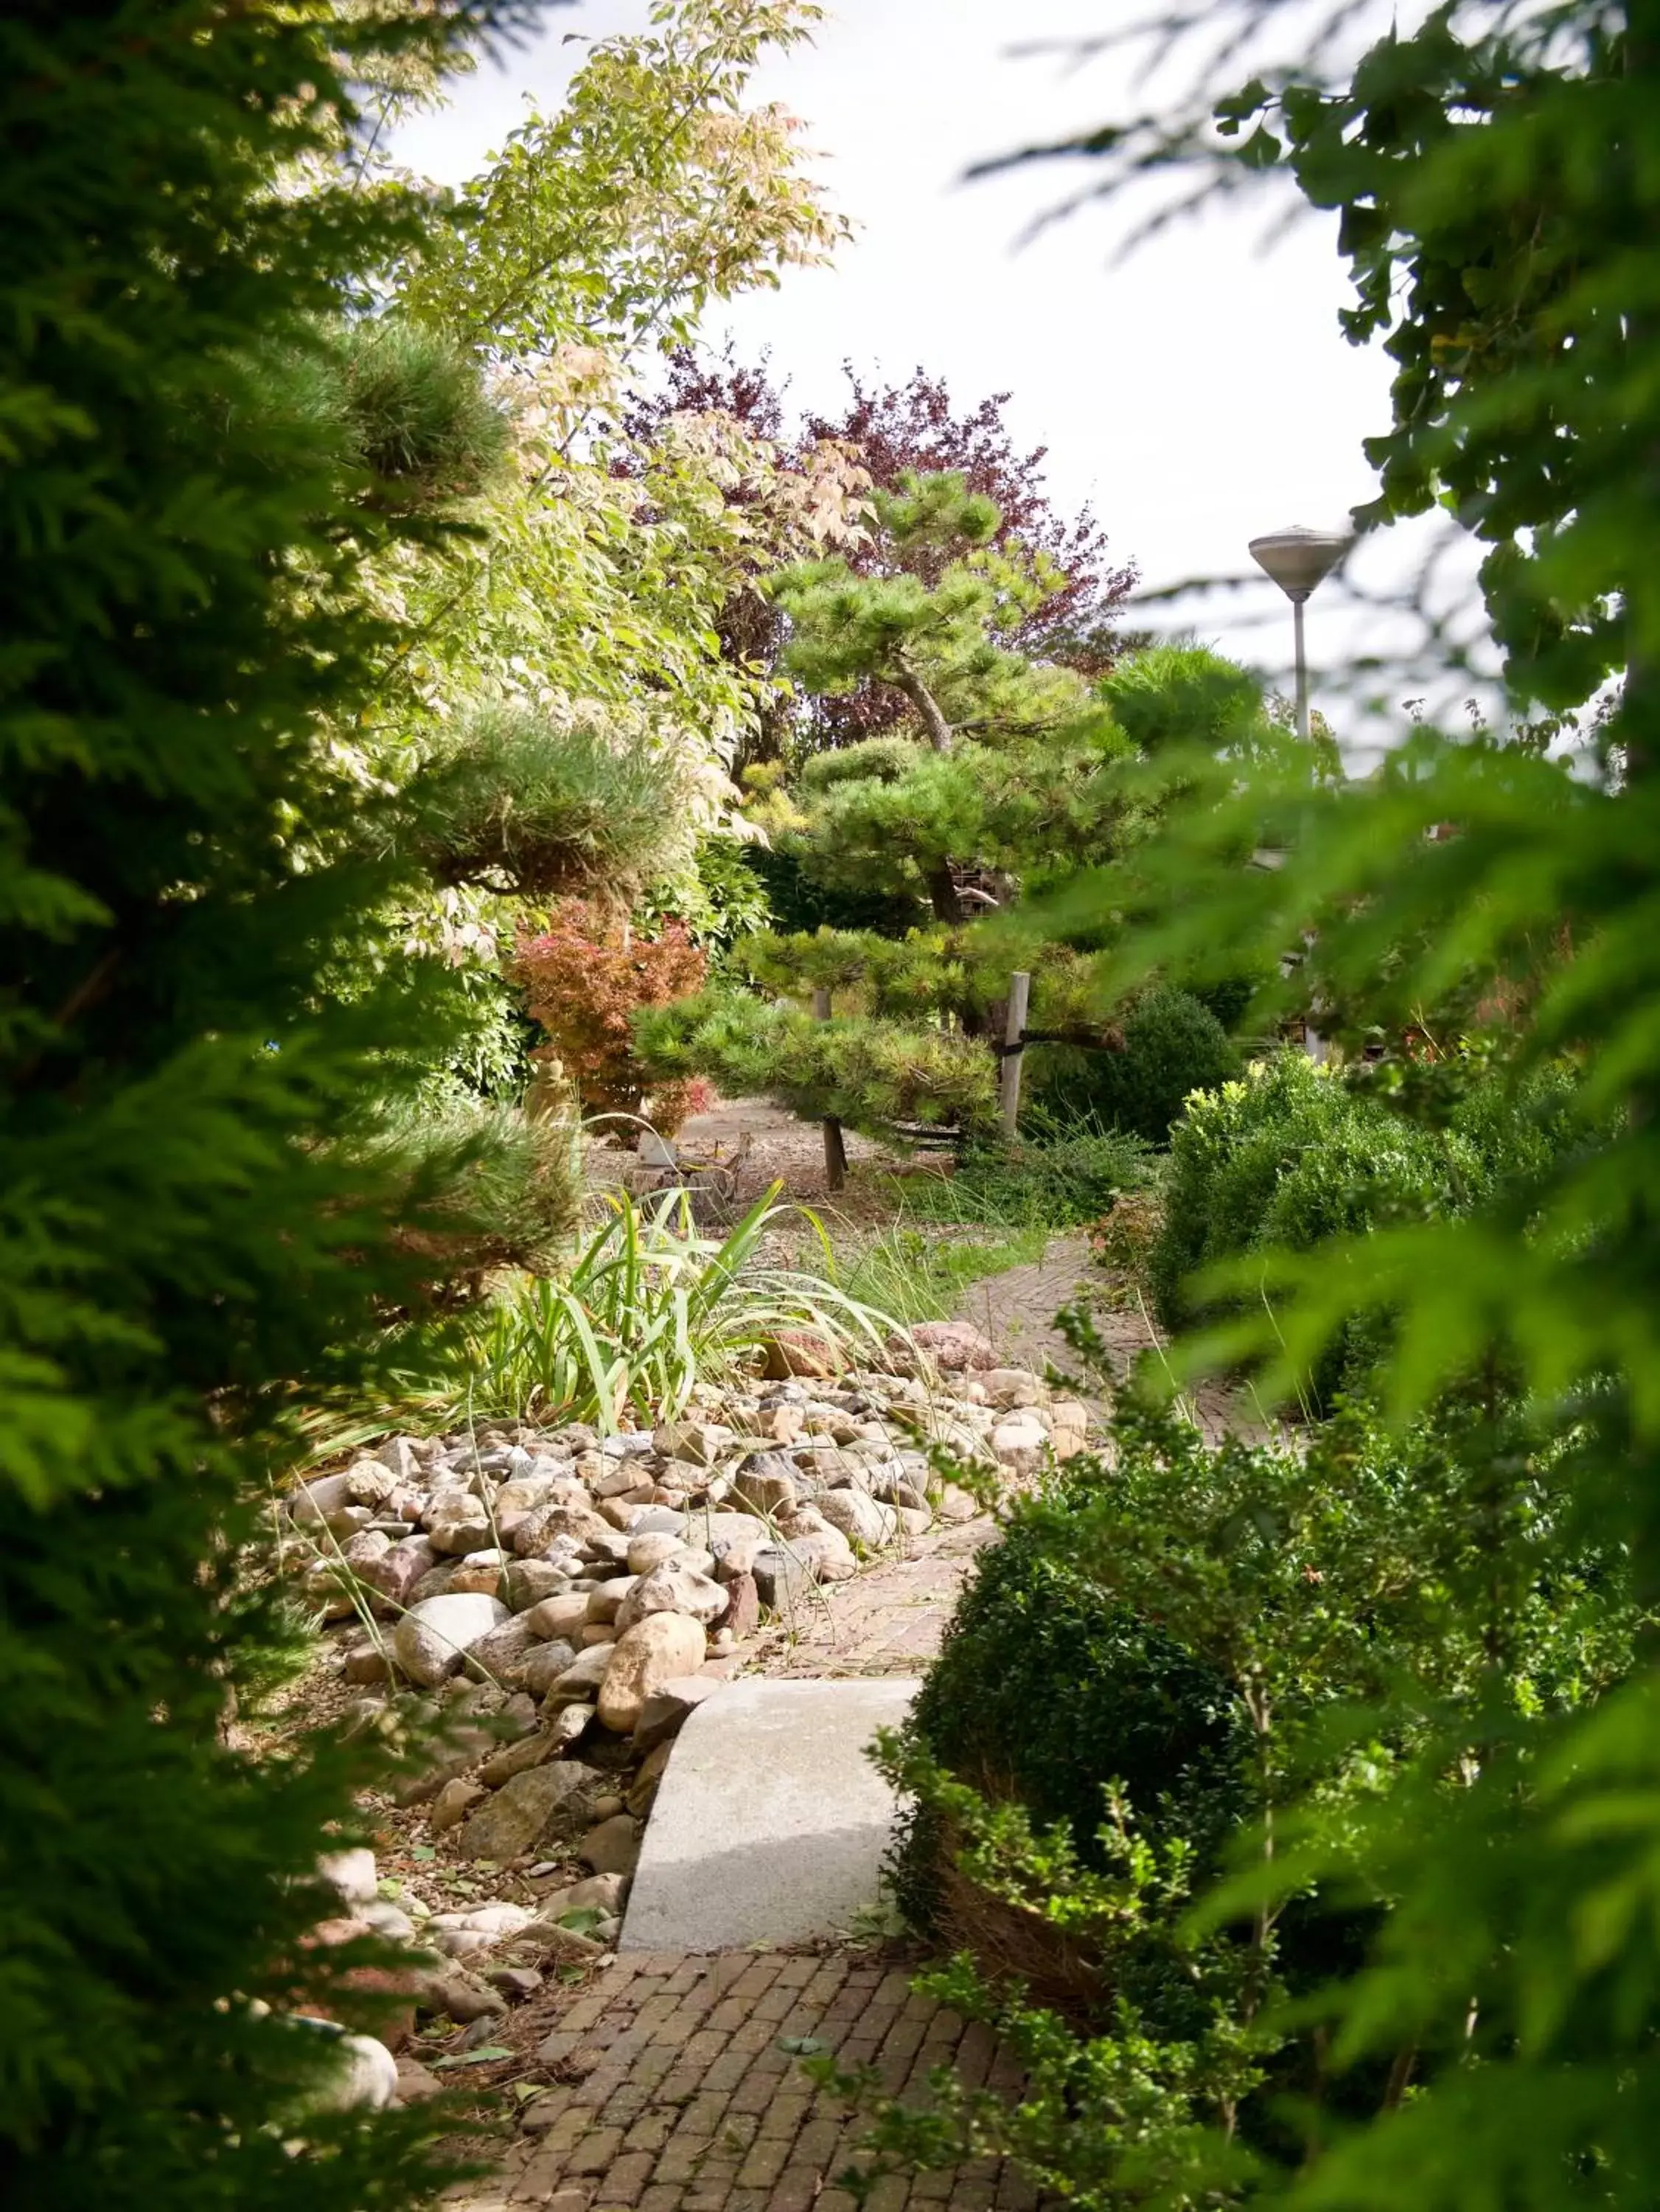 Garden view in B&B “Te Warskip bij BlokVis”